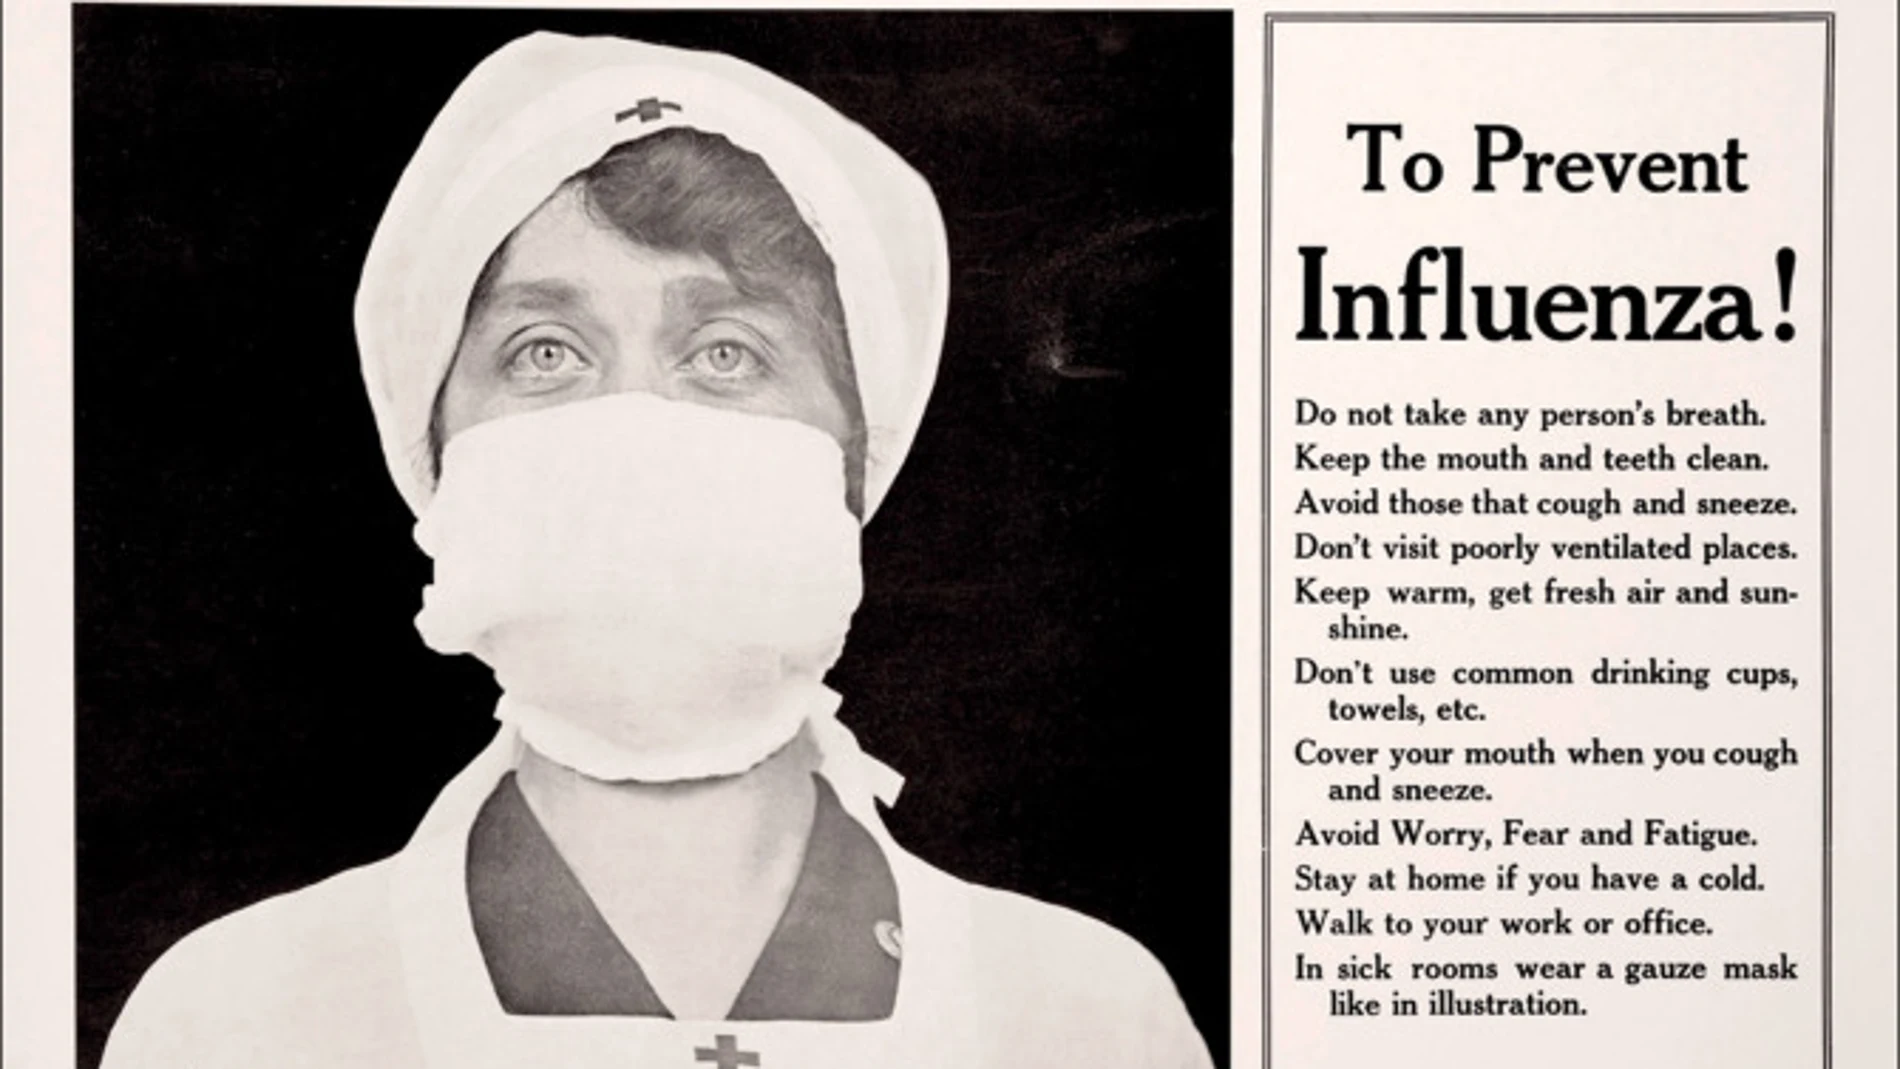 Las recomendaciones contra la gripe eran muy similares a las de ahora